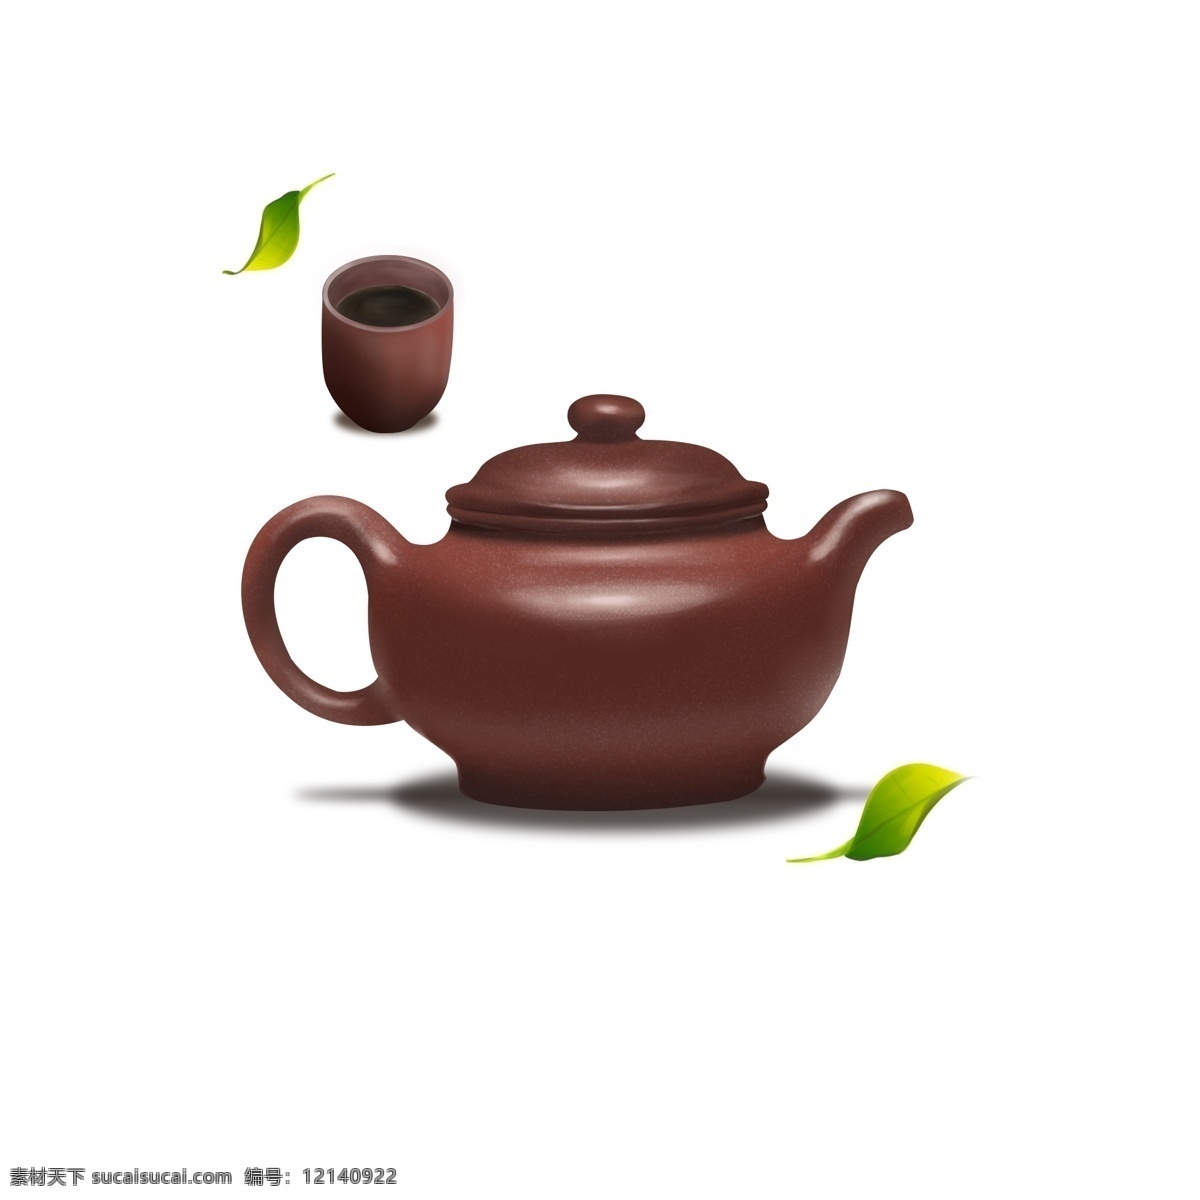 紫砂壶 茶壶 喝茶 茶杯 茶叶 茶具 喝茶茶杯 茶叶茶具